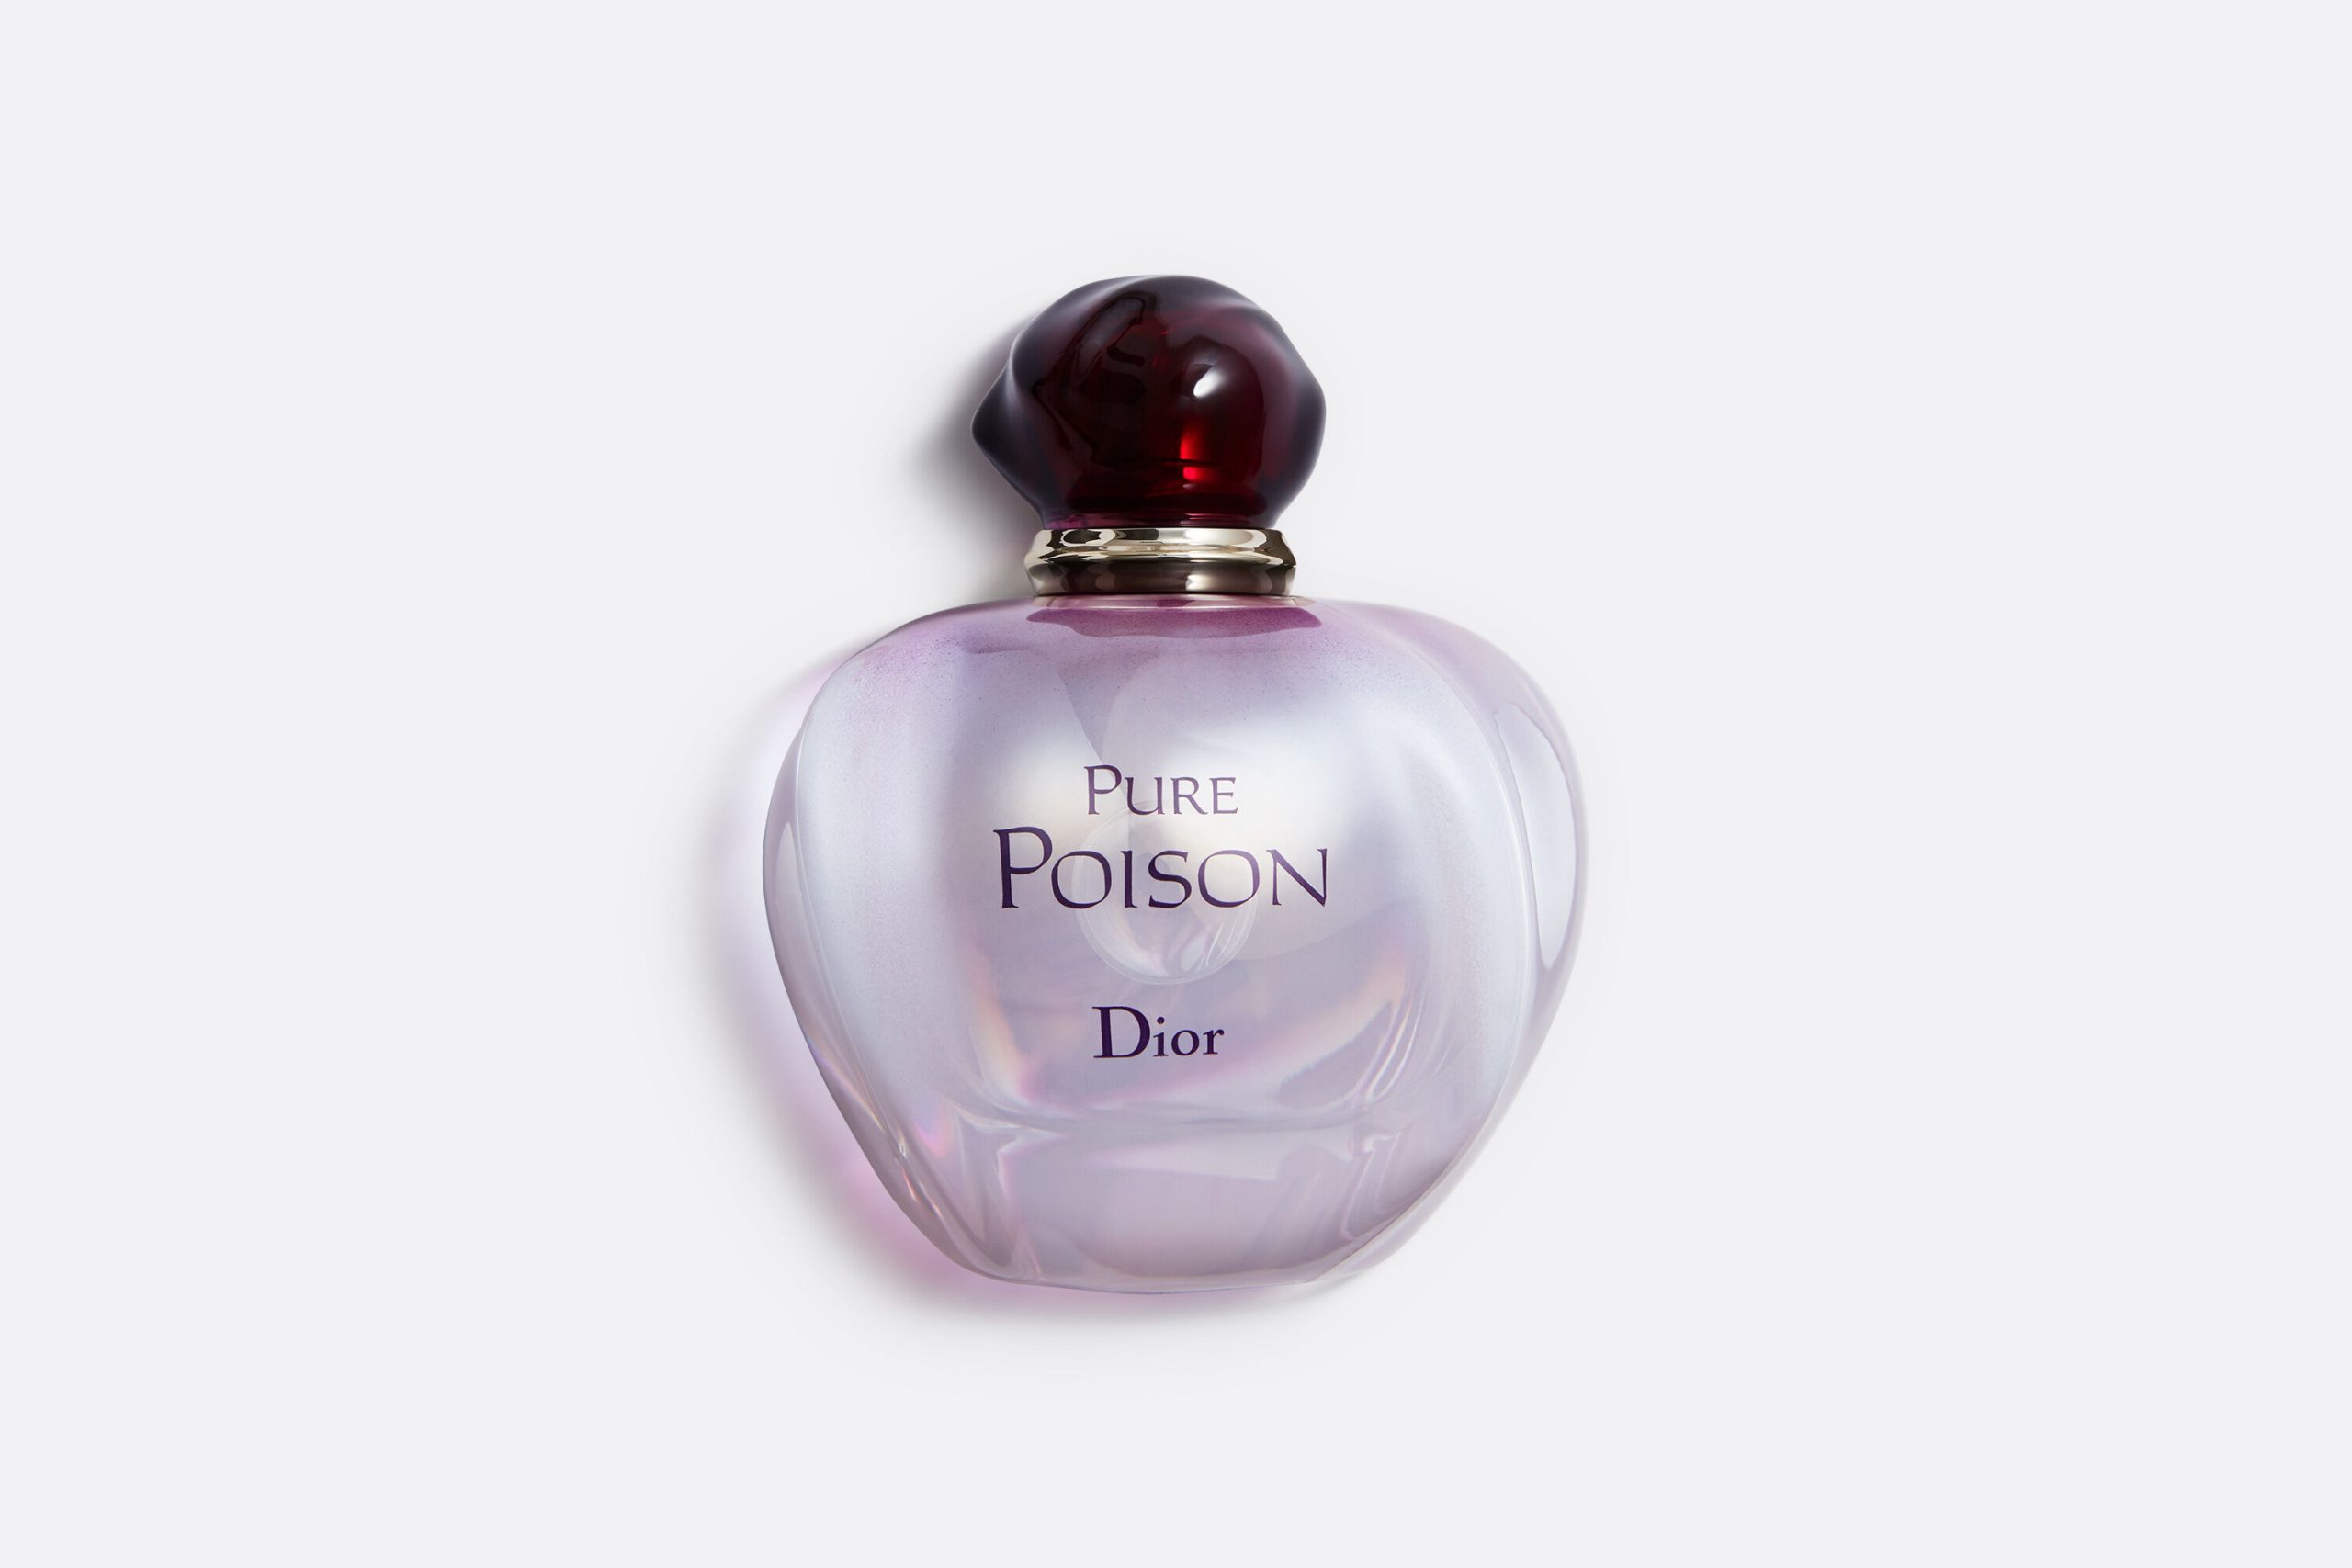 Christian Dior Pure Poison for Women Eau De Parfum 100ml at Ratans Online Shop - Perfumes Wholesale and Retailer Fragrance